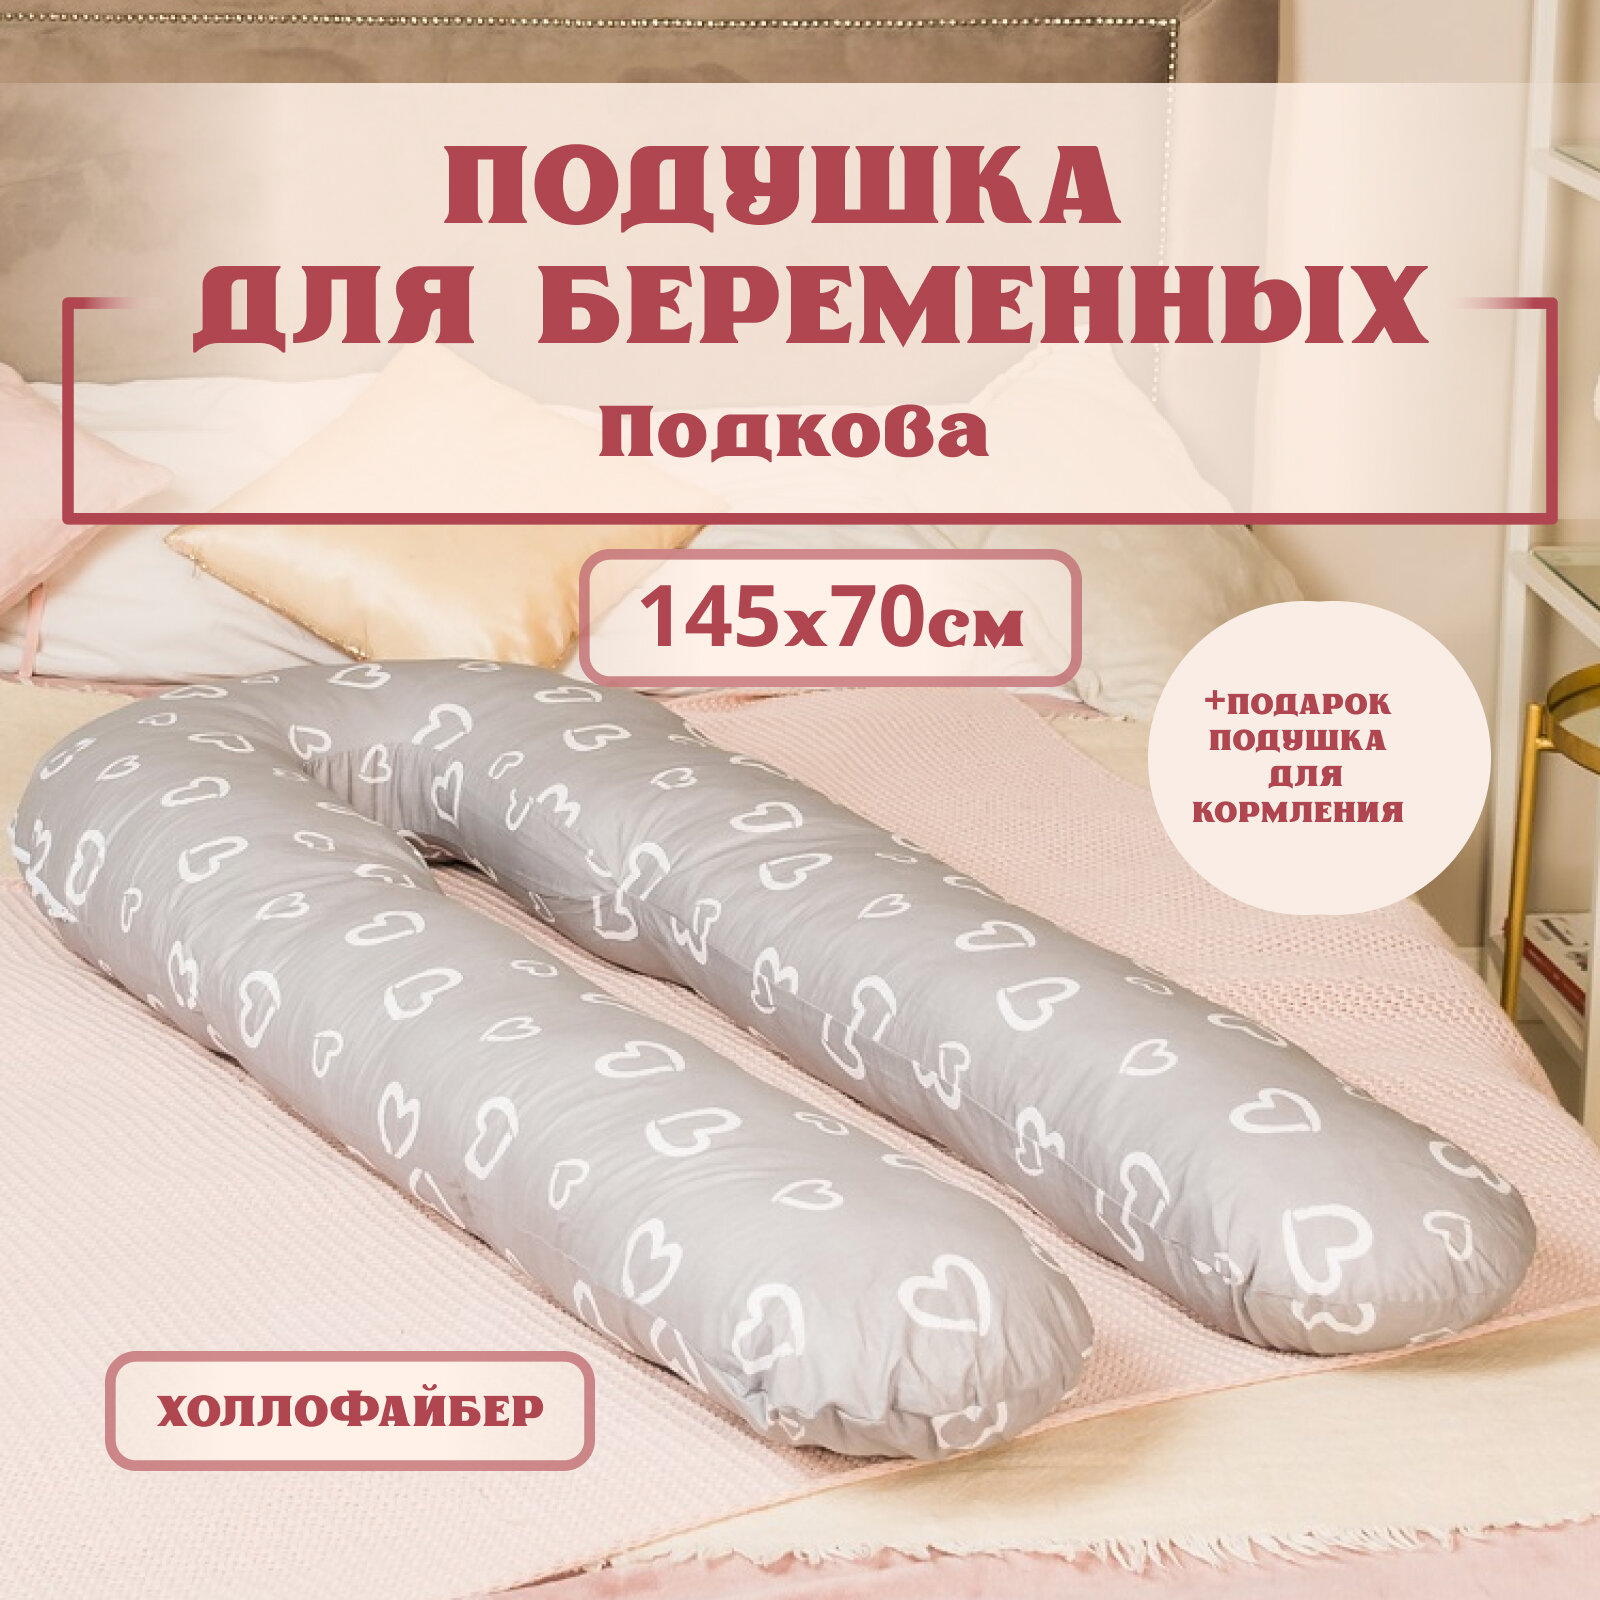 Подушка для беременных для сна и кормления, Большая подкова форма U. Цвет-Сердечки на сером.Texxet. Подушка для кормления в подарок